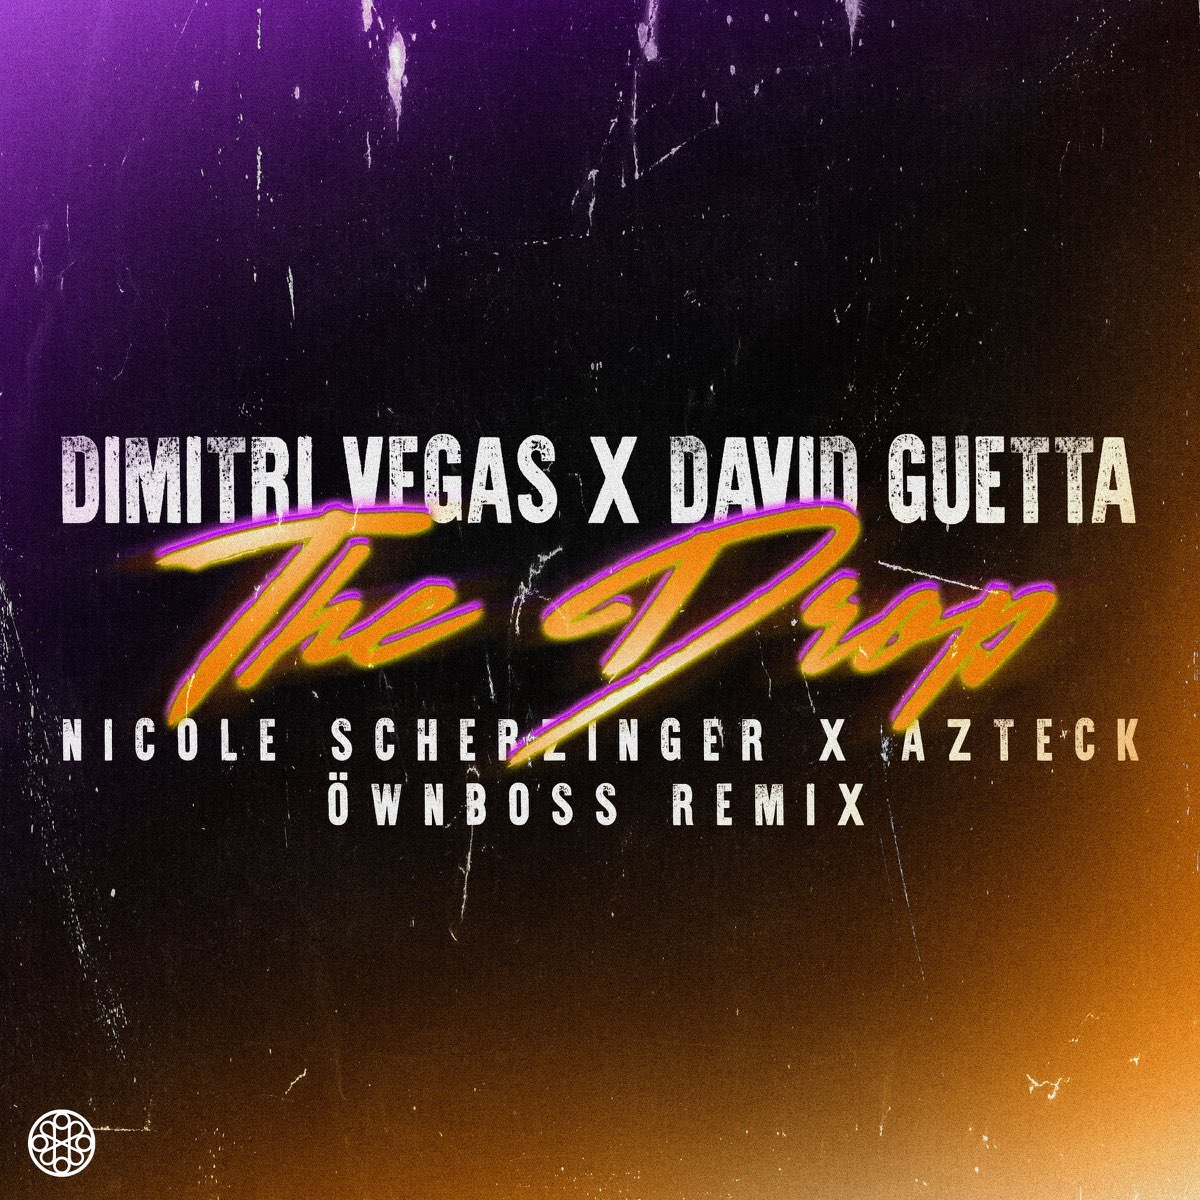 Dimitri Vegas, David Guetta, & Nicole Scherzinger featuring Azteck — The Drop (Öwnboss Remix) cover artwork